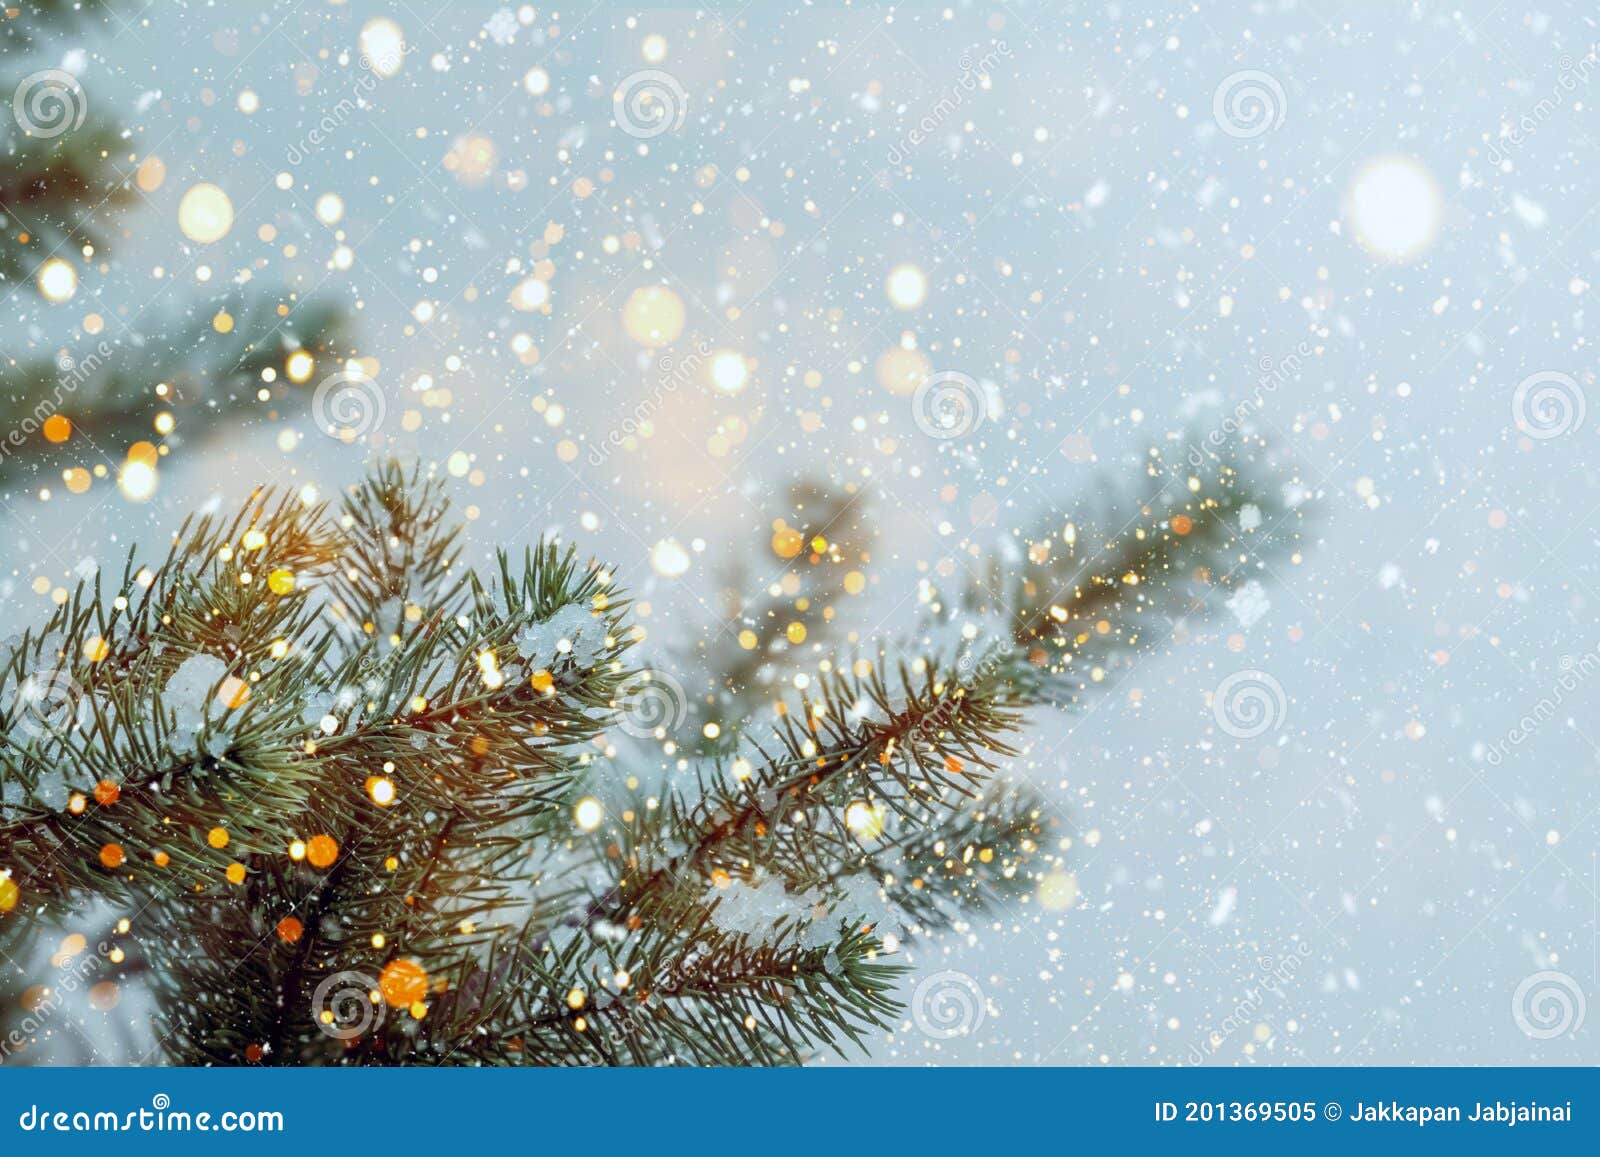 Cây thông Noel lấp lánh với đèn led và đầy màu sắc sẽ khiến bạn choáng ngợp và cảm nhận được không khí noel đang đến gần. Hãy xem hình ảnh để thấy được sự long lanh của cây thông giáng sinh.